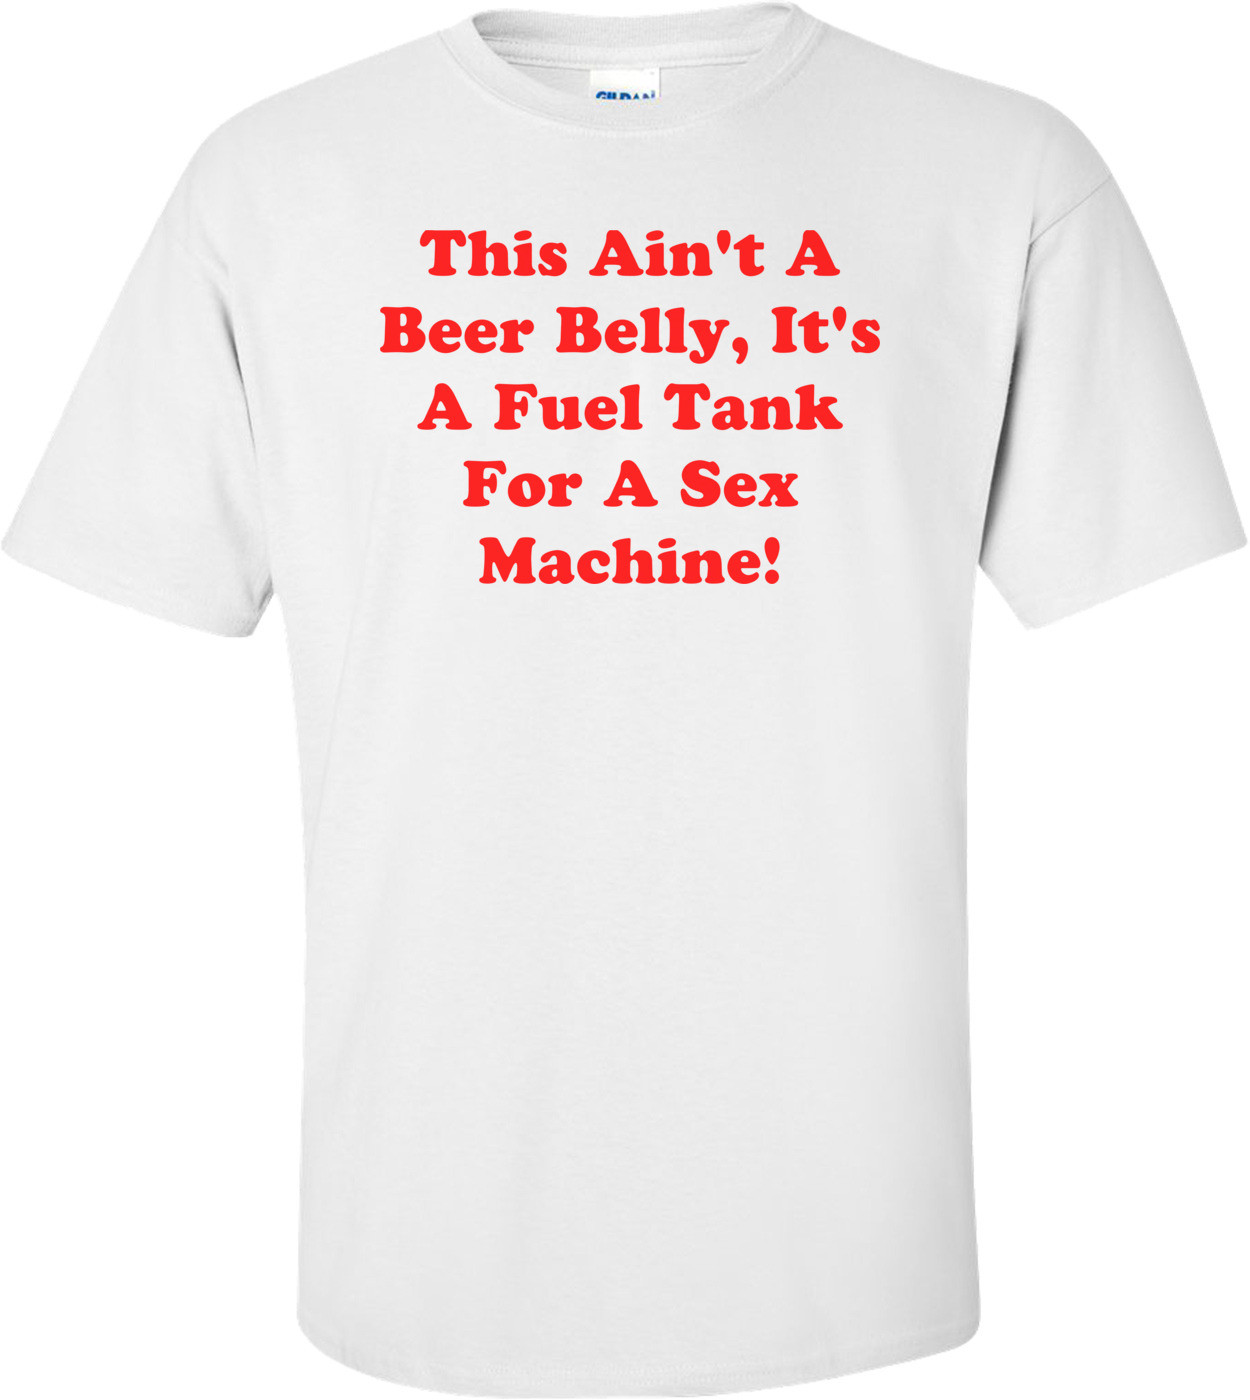 This Ain't A Beer Belly, It's A Fuel Tank For A Sex Machine! T-Shirt